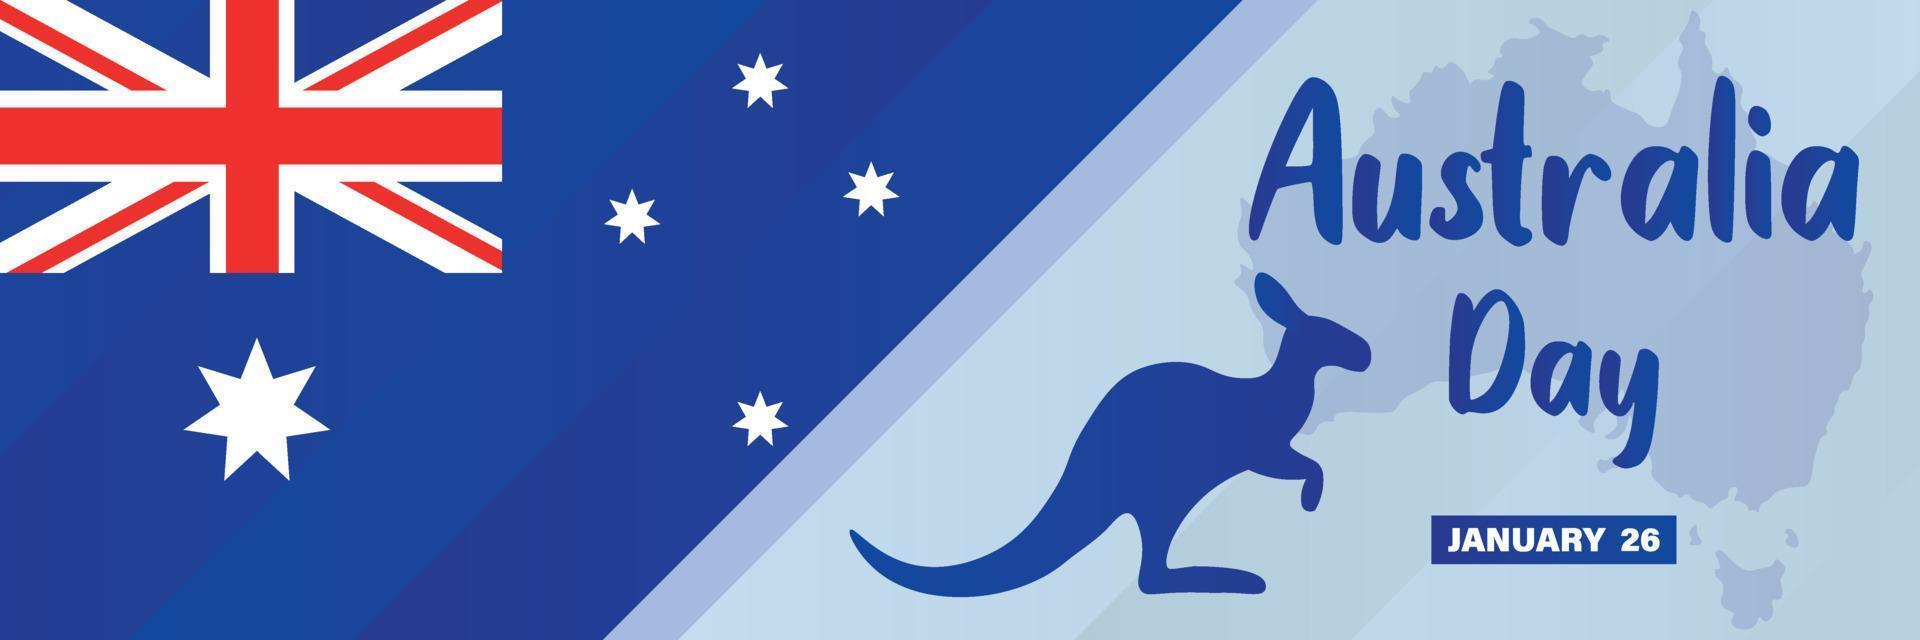 26. januar, glücklicher australien-tag. australische nationalflagge, karte und känguru. hintergrund, poster, karte, bannervektorillustration vektor